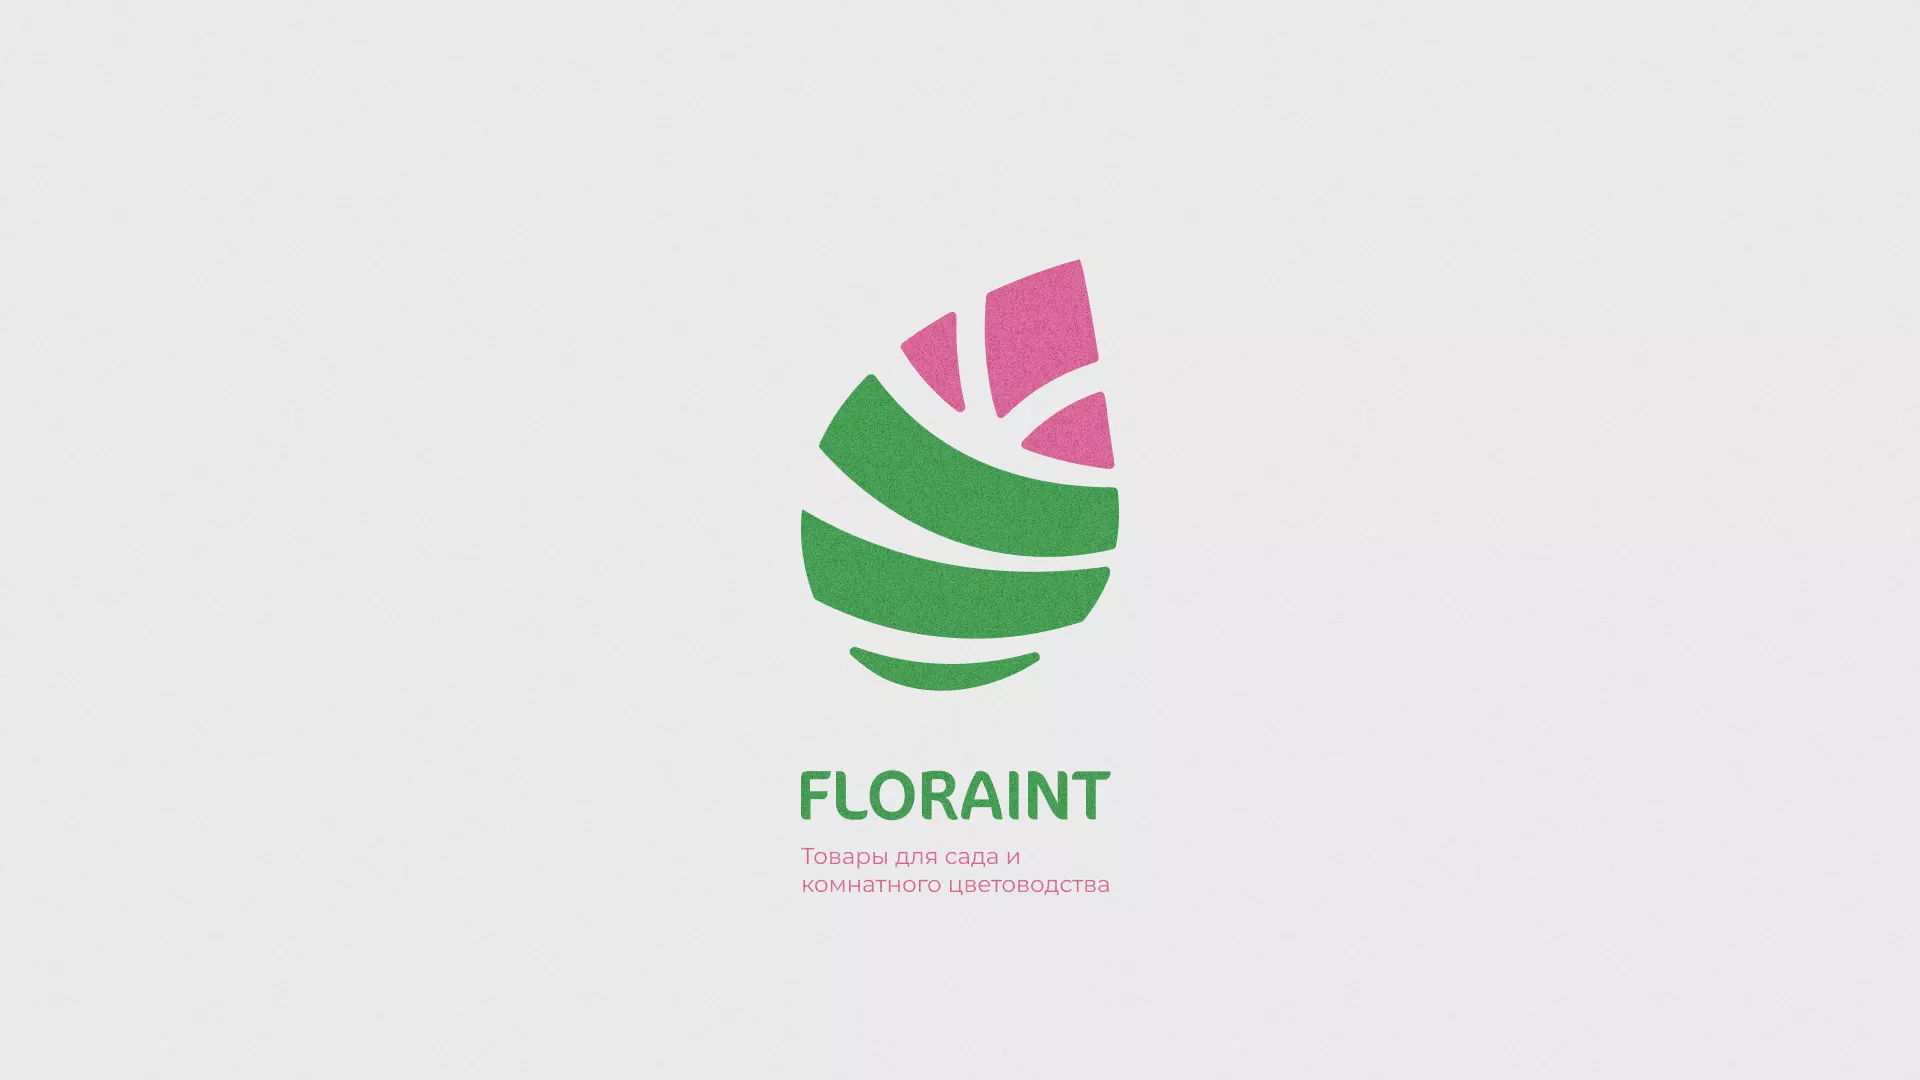 Разработка оформления профиля Instagram для магазина «Floraint» в Харабалях